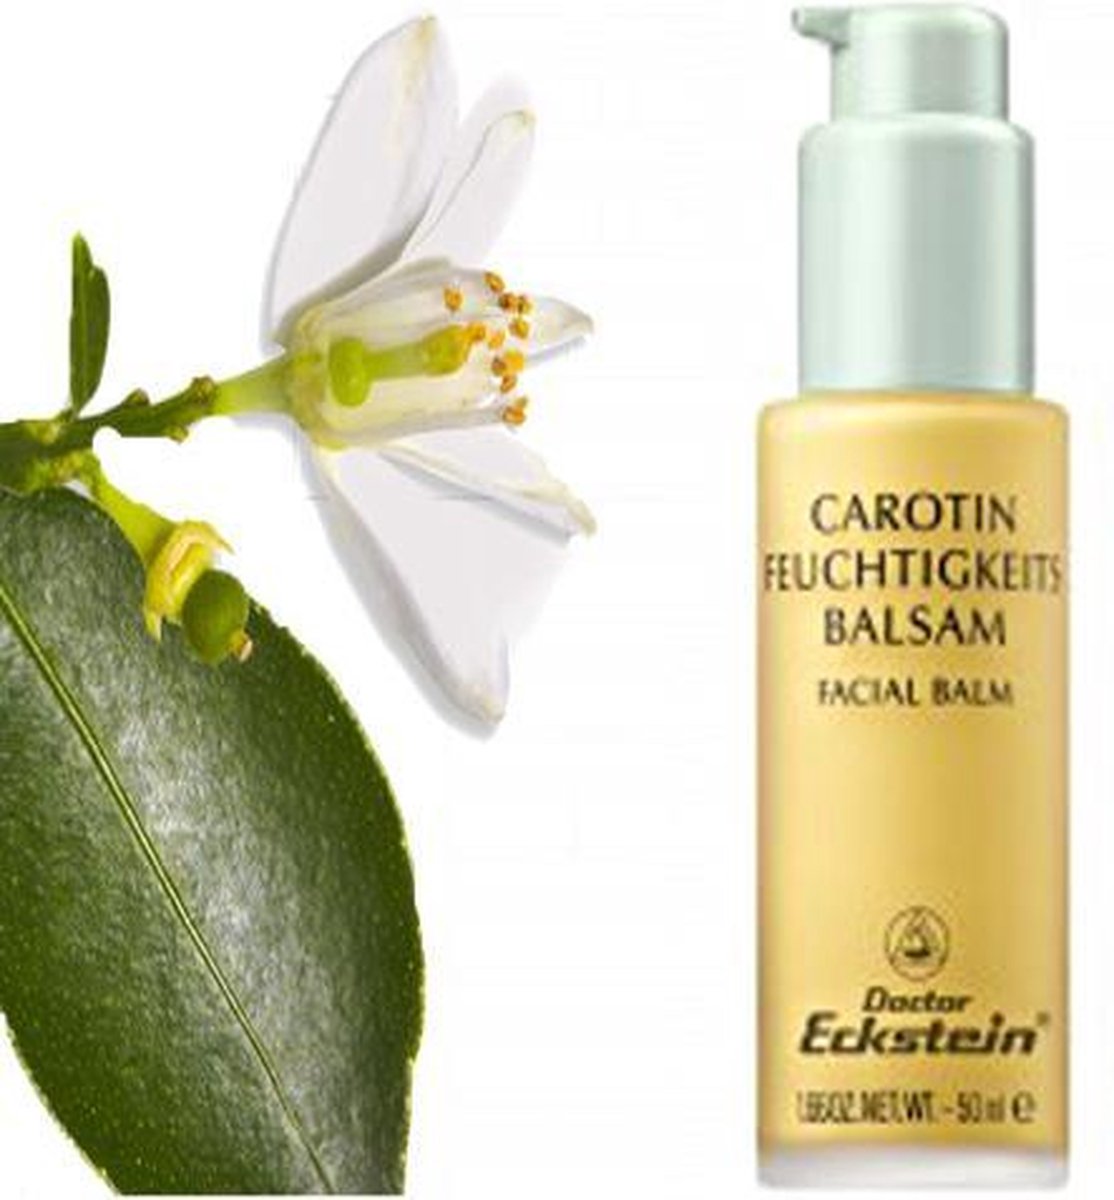 Dr Eckstein - Carotin vocht balsam 50 ml